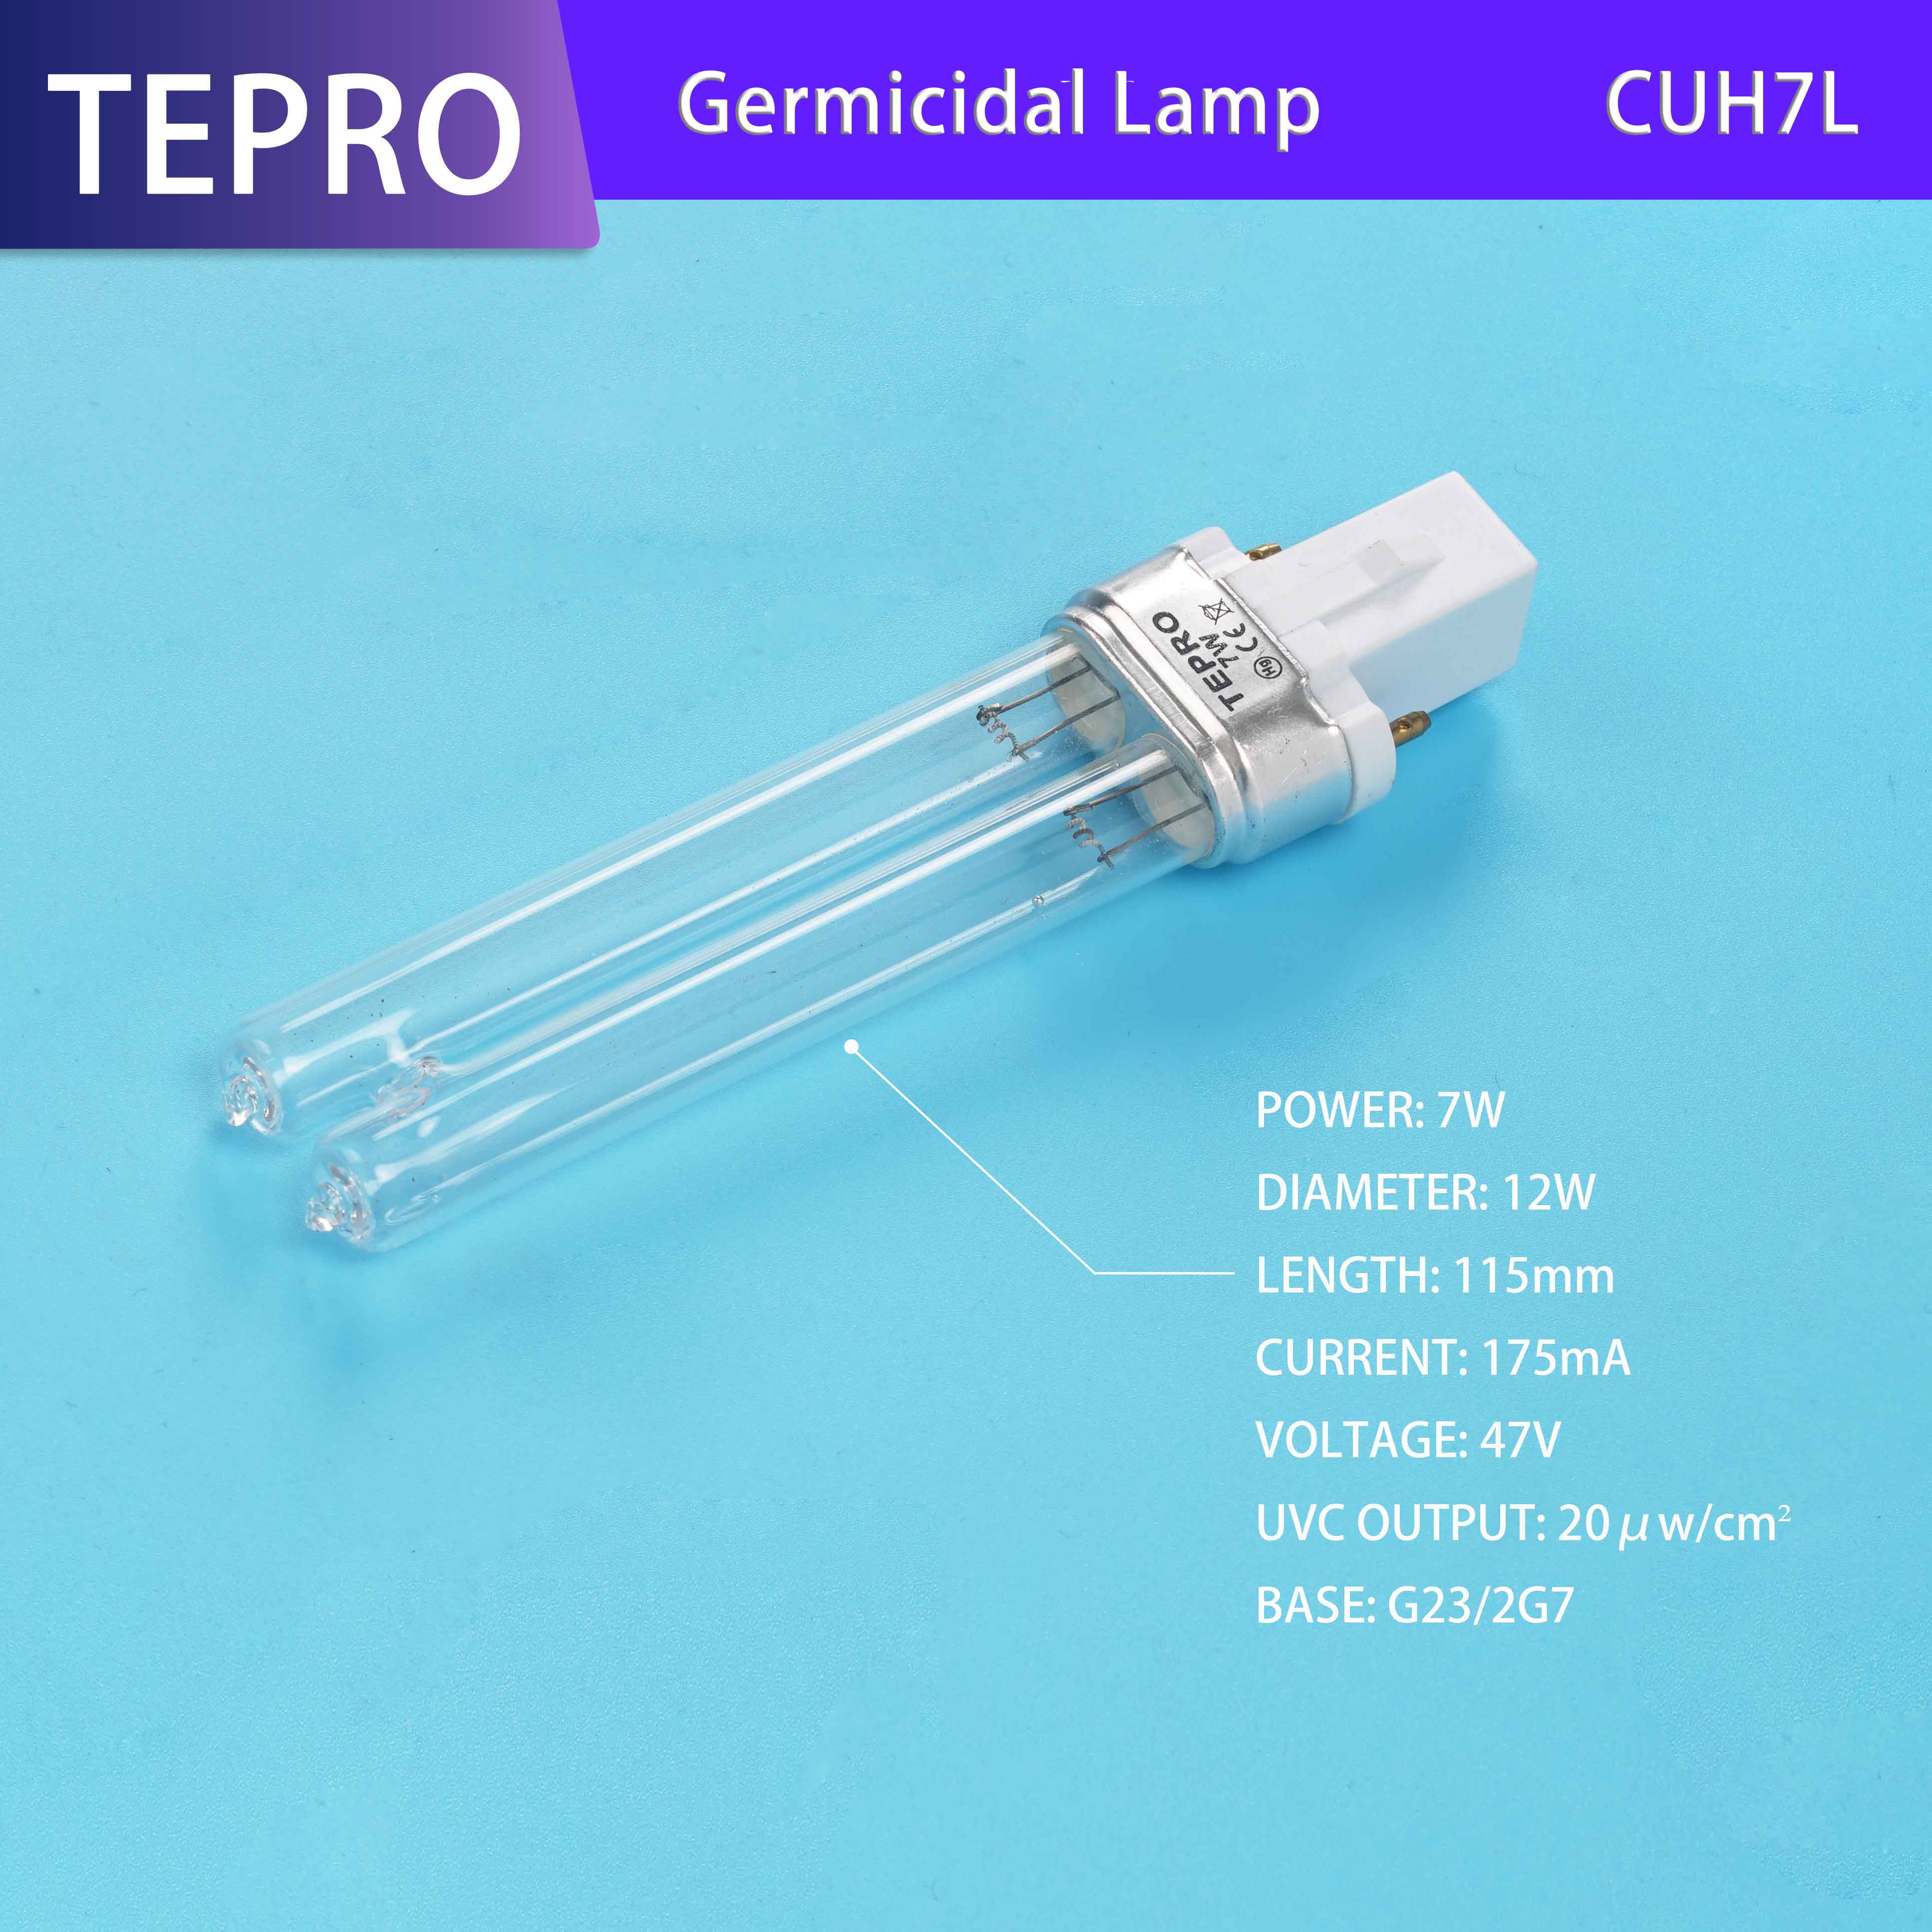 Tepro Array image6